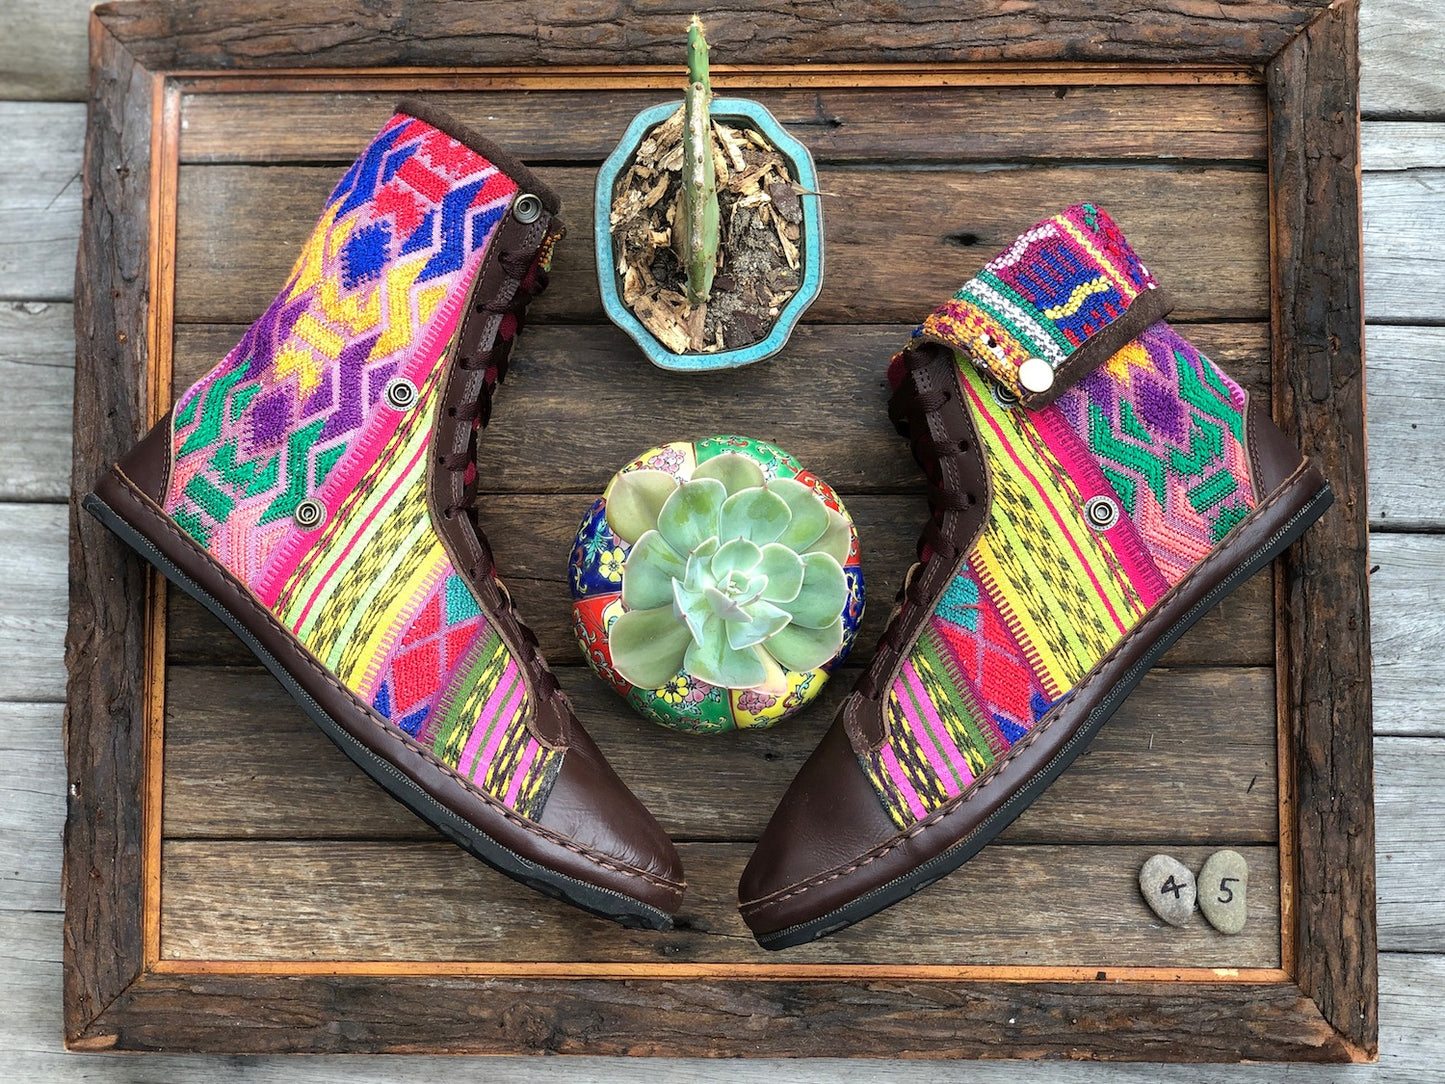 Size 45 - Fold down Desert Boots Yellow Pop Aztec